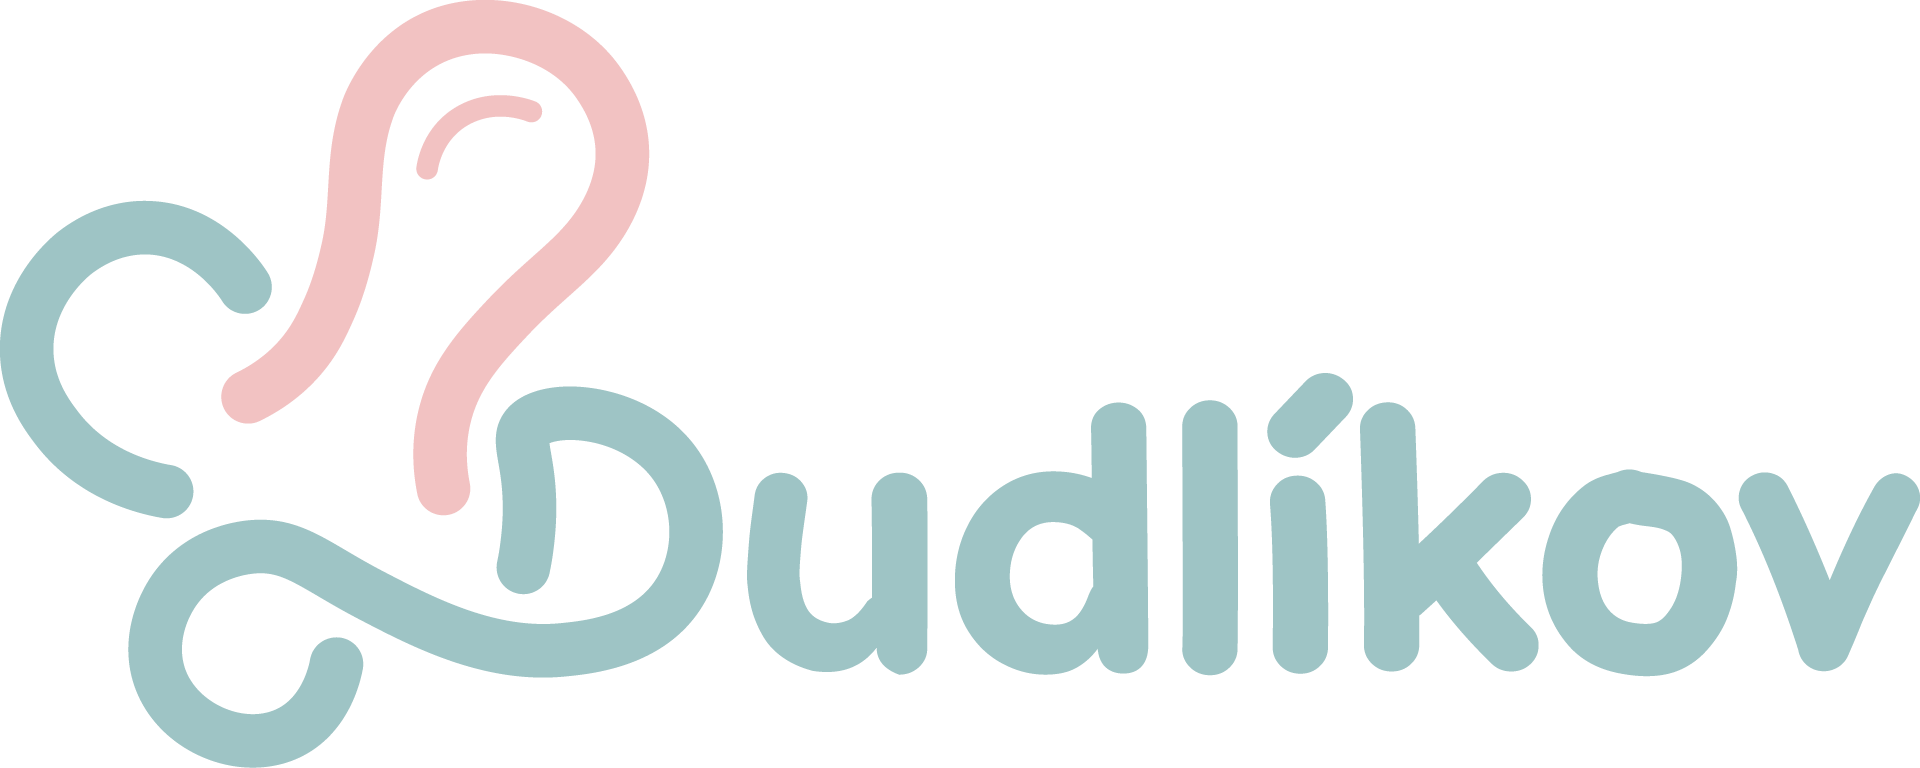 Dudlíkov logo